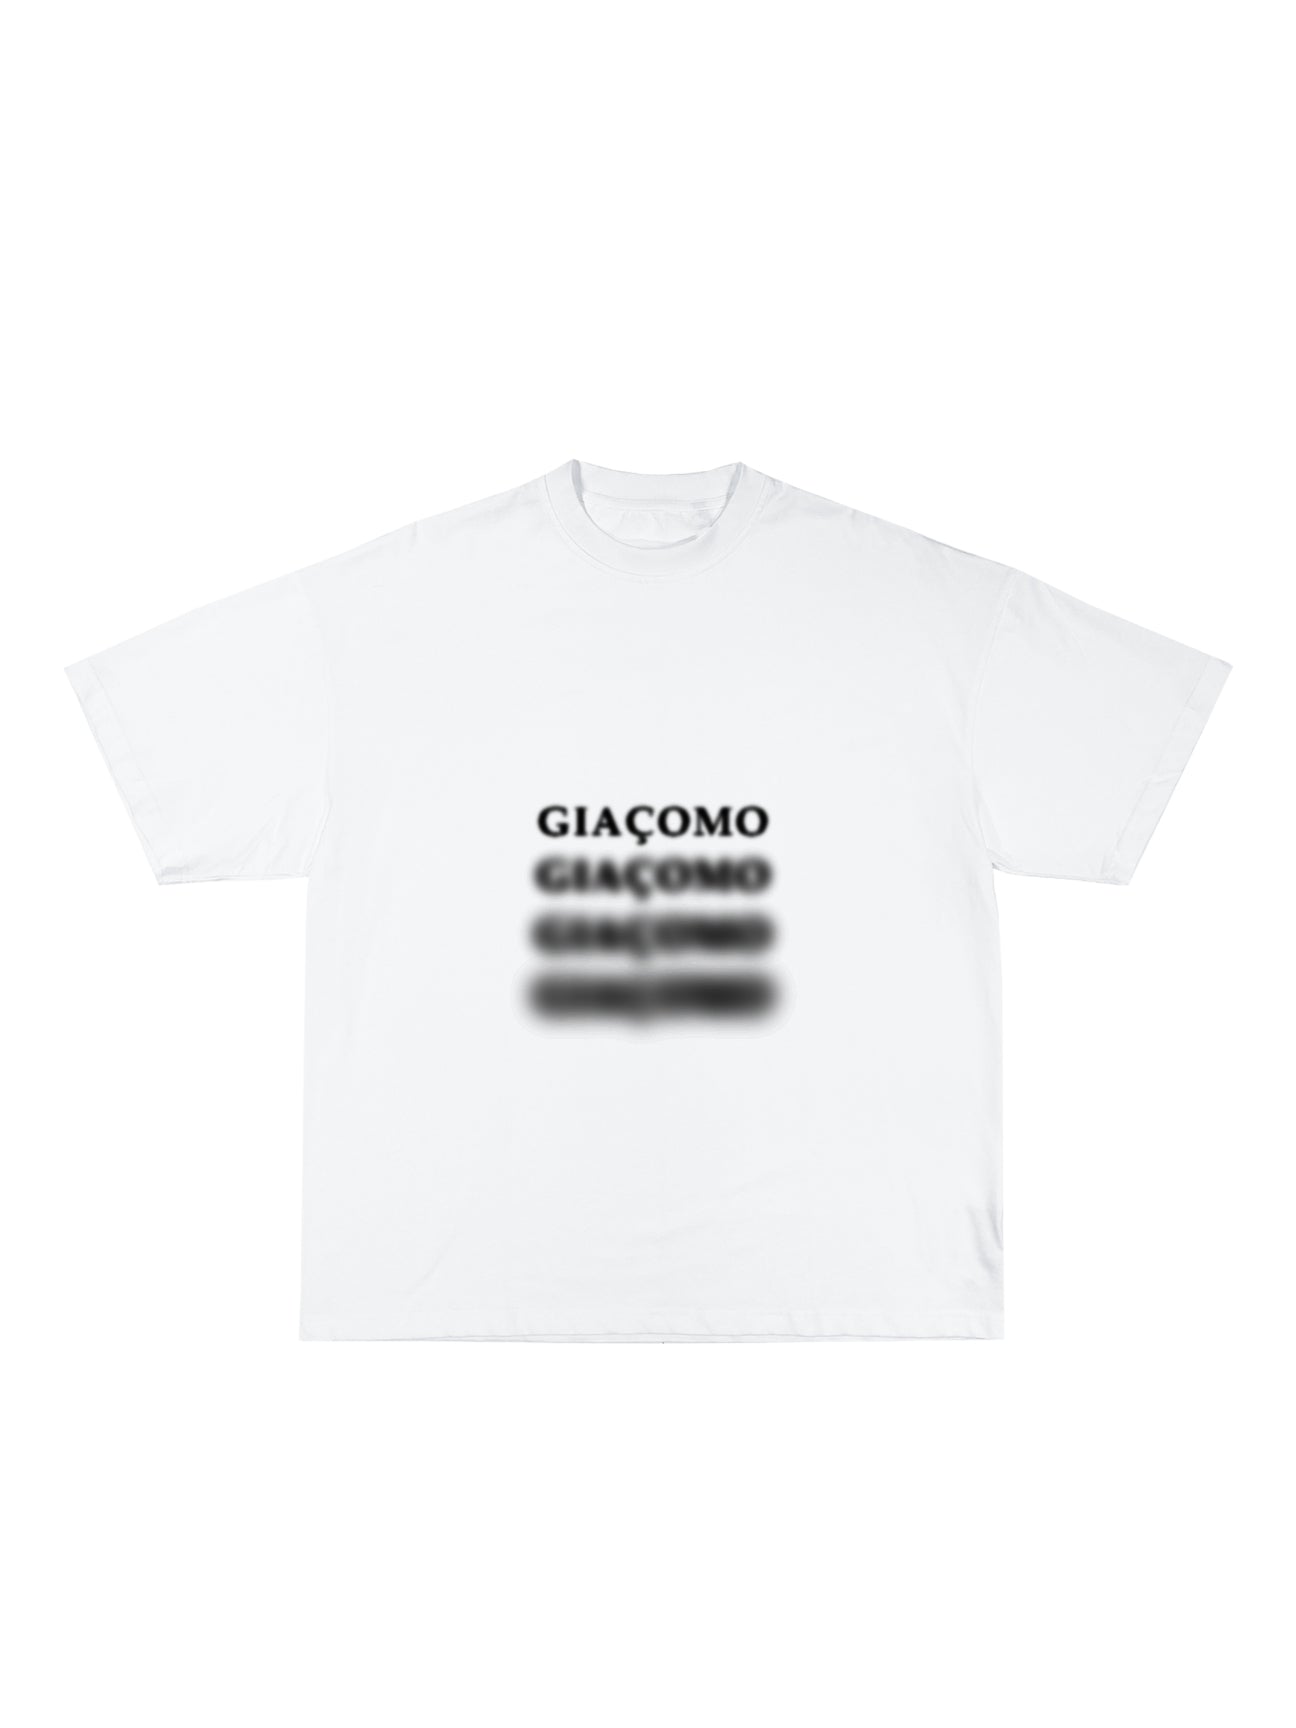 'Giaçomo' Floating Smoke White T-Shirt